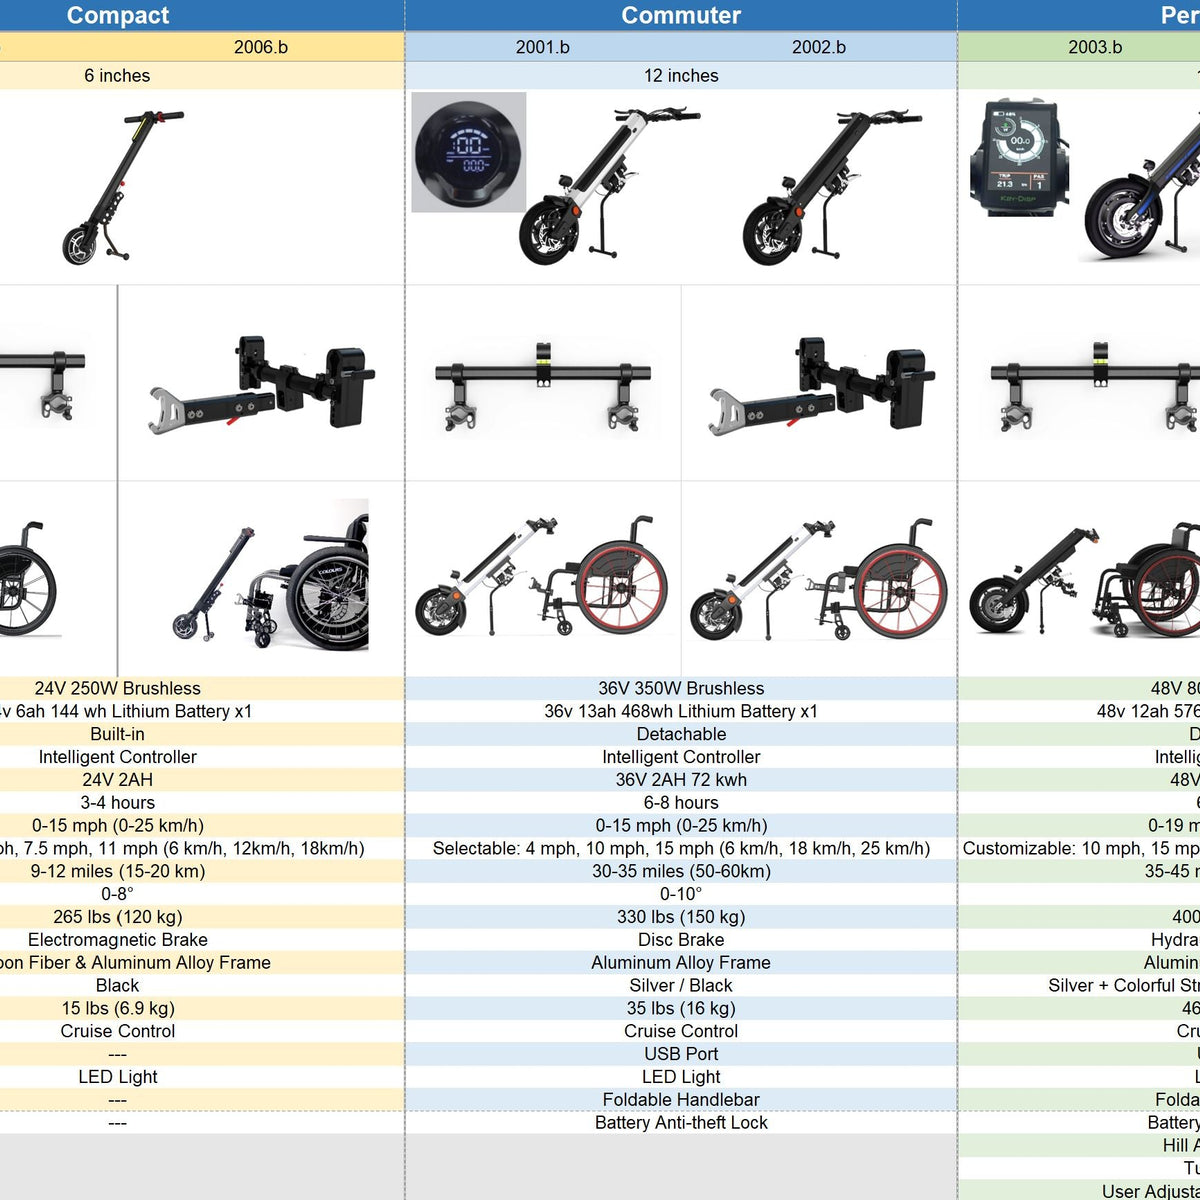 Compacte elektrische handbike voor handmatige rolstoelen